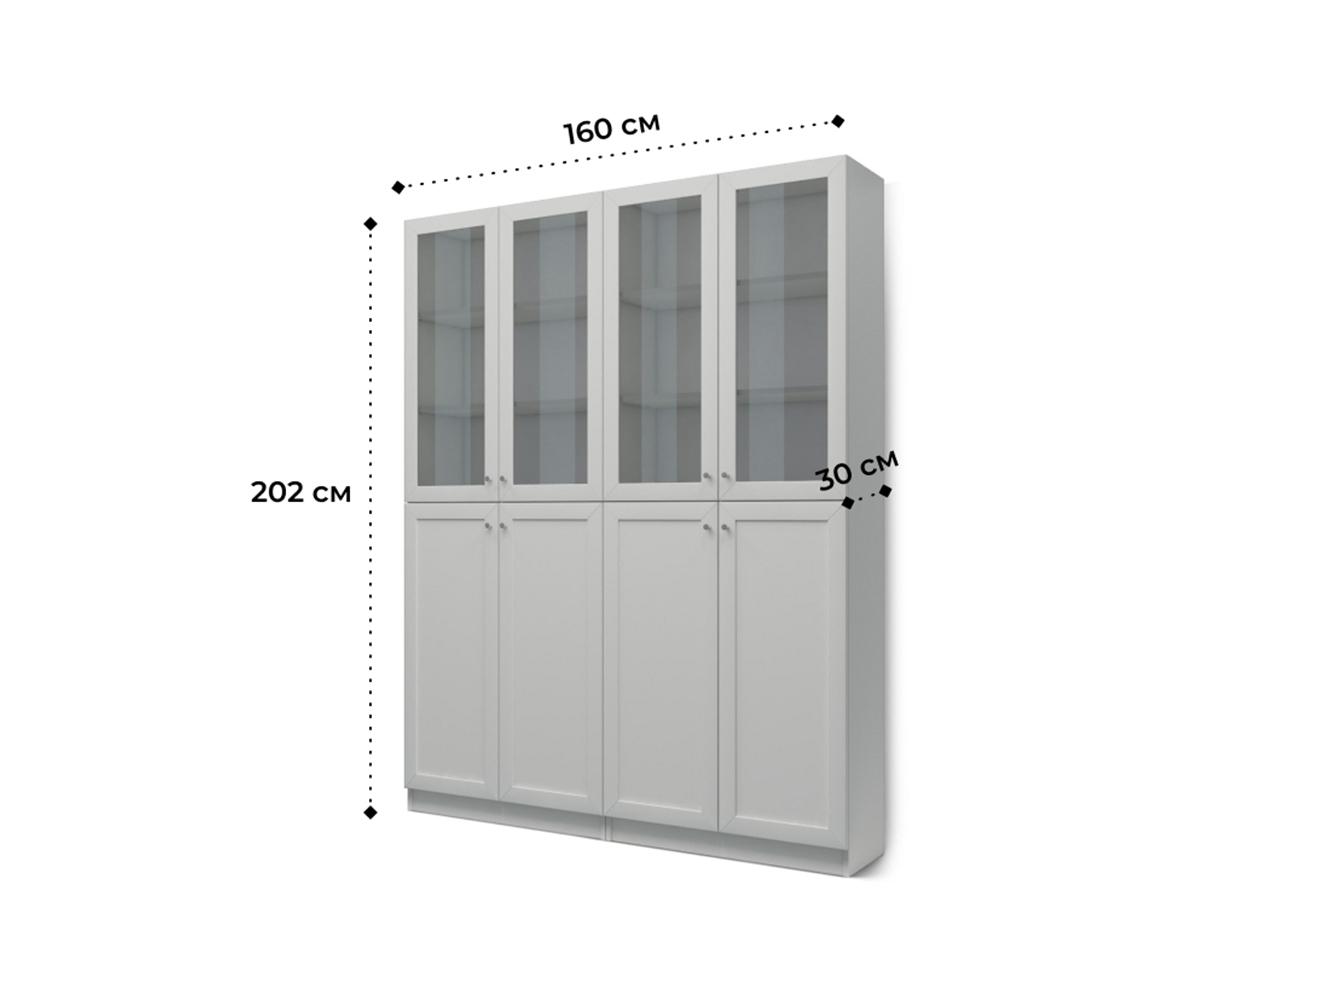 Изображение товара Книжный шкаф Билли 342 grey ИКЕА (IKEA), 160x30x202 см на сайте adeta.ru